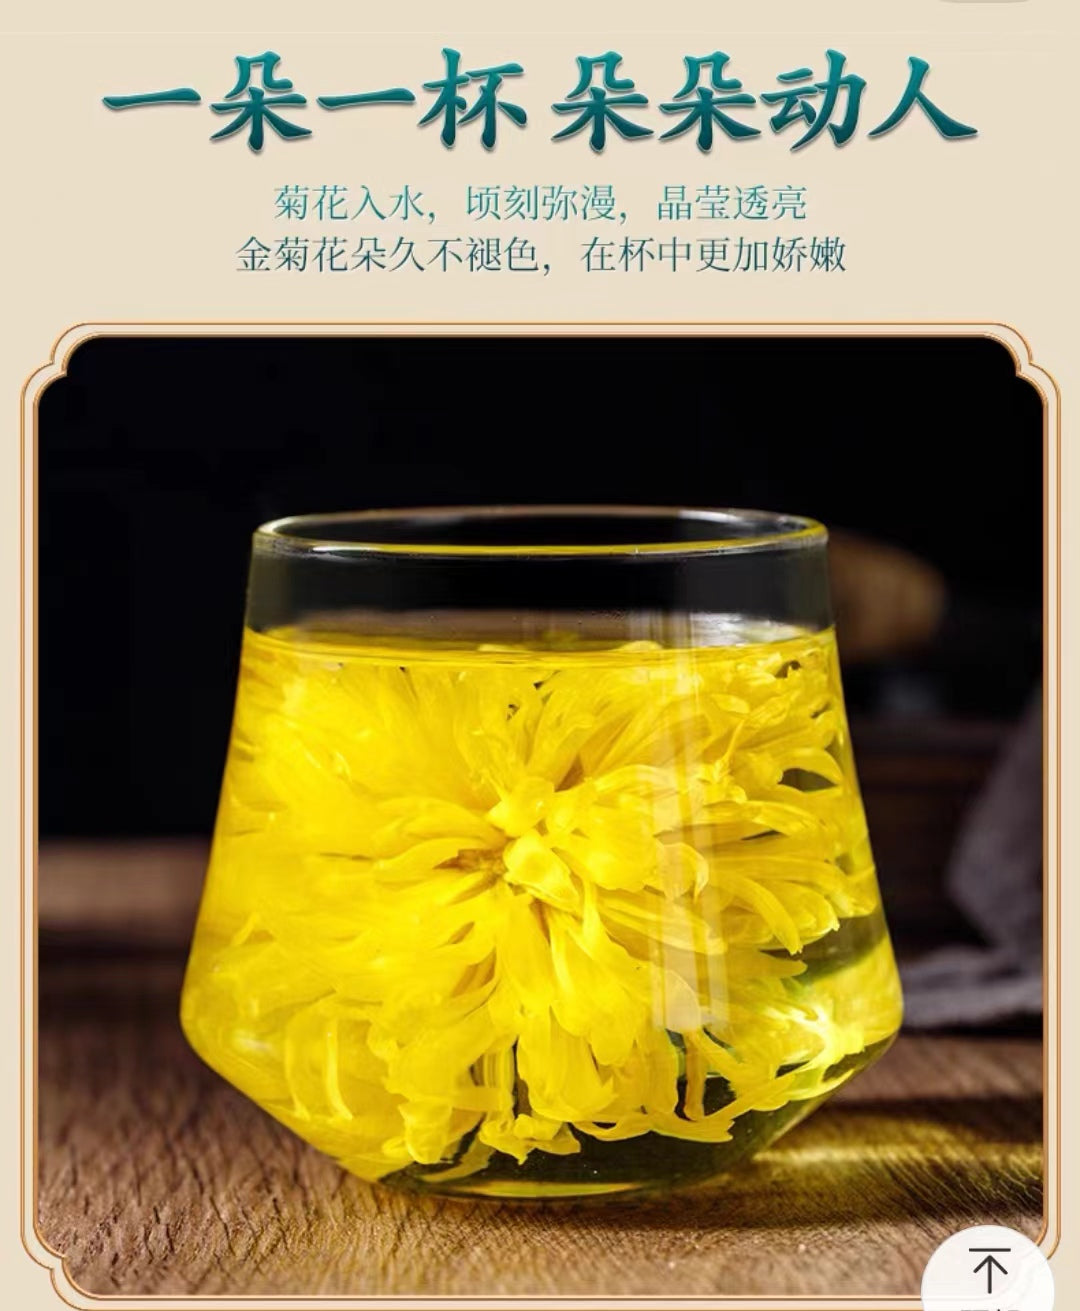 Chinese Tea- Yellow Chrysanthemum Tea